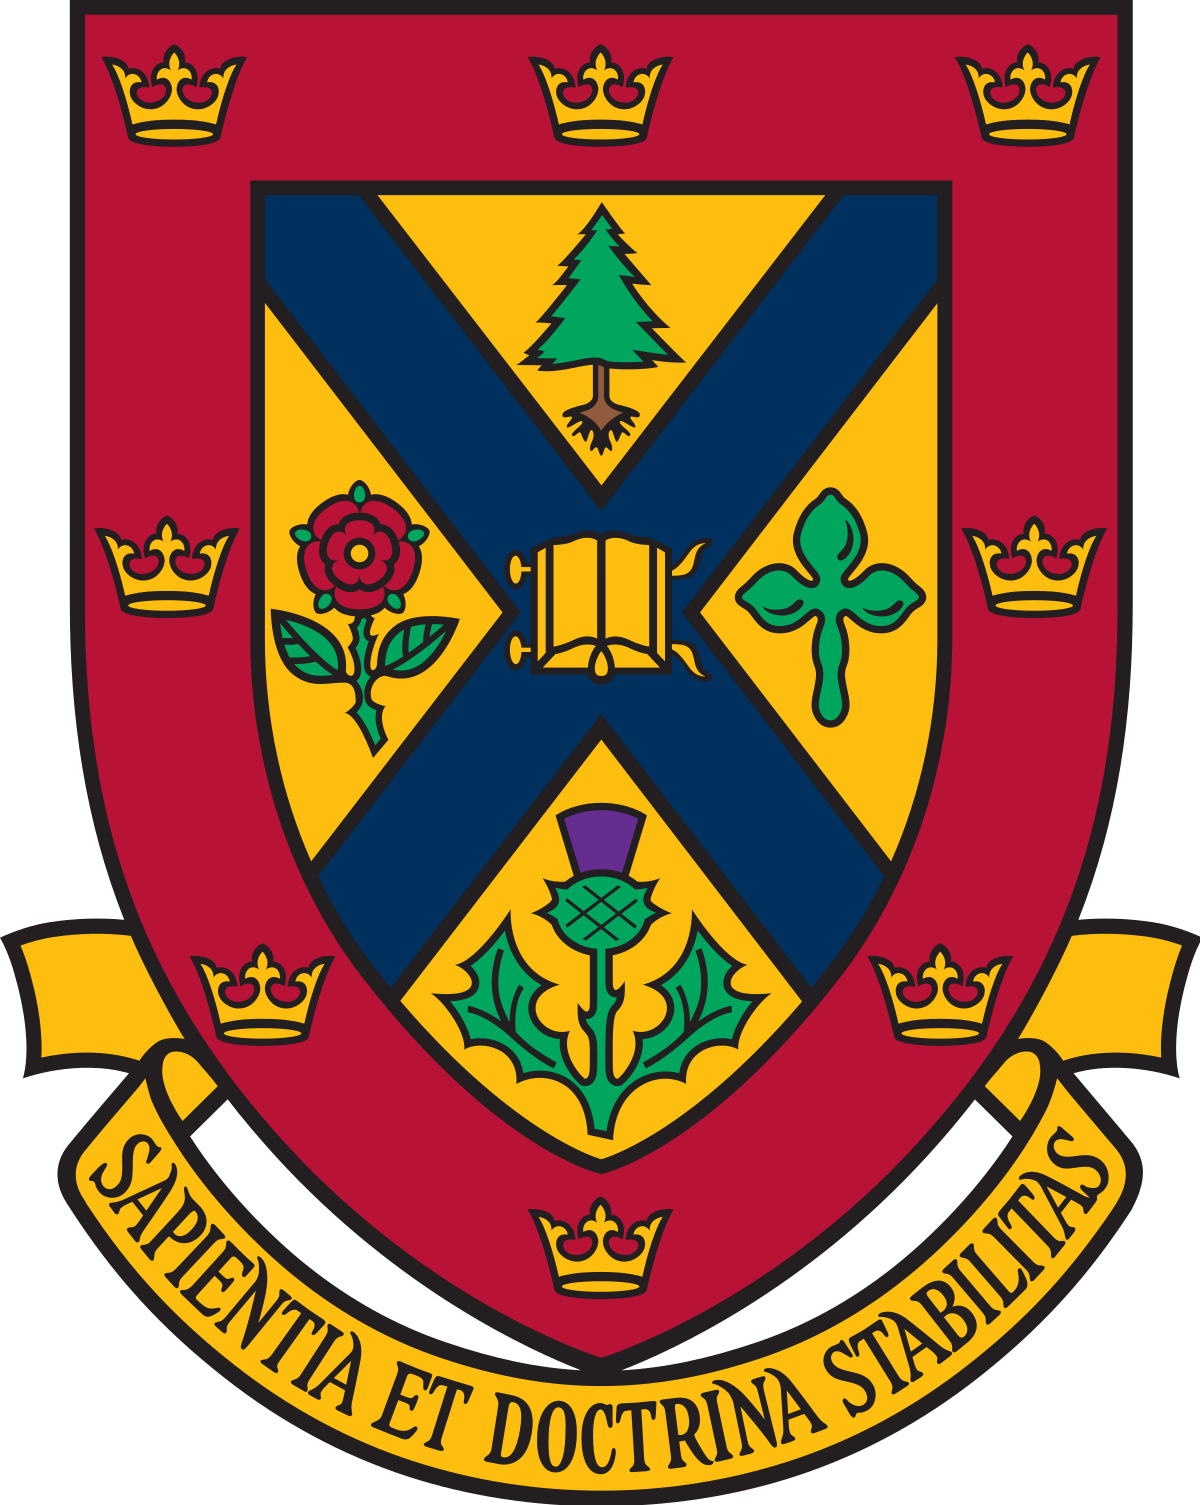 Queen's University School of Medicine Canada